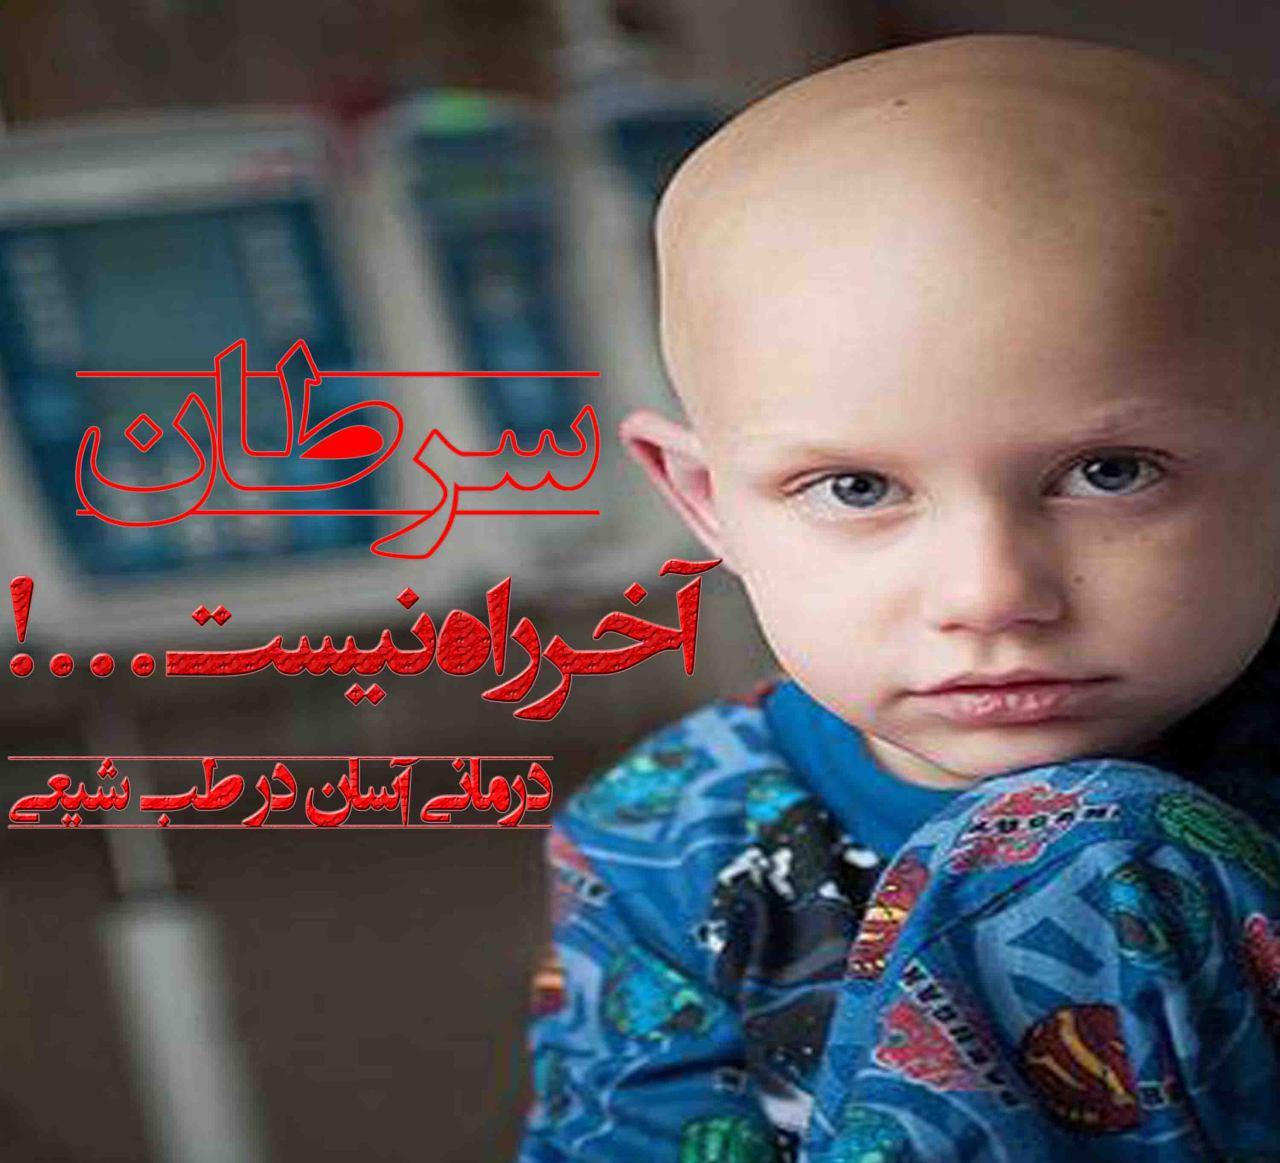 سرطان، آخر راه نیست! درمان آسان و کاربردی سرطان در طب معجزه گر اسلامی